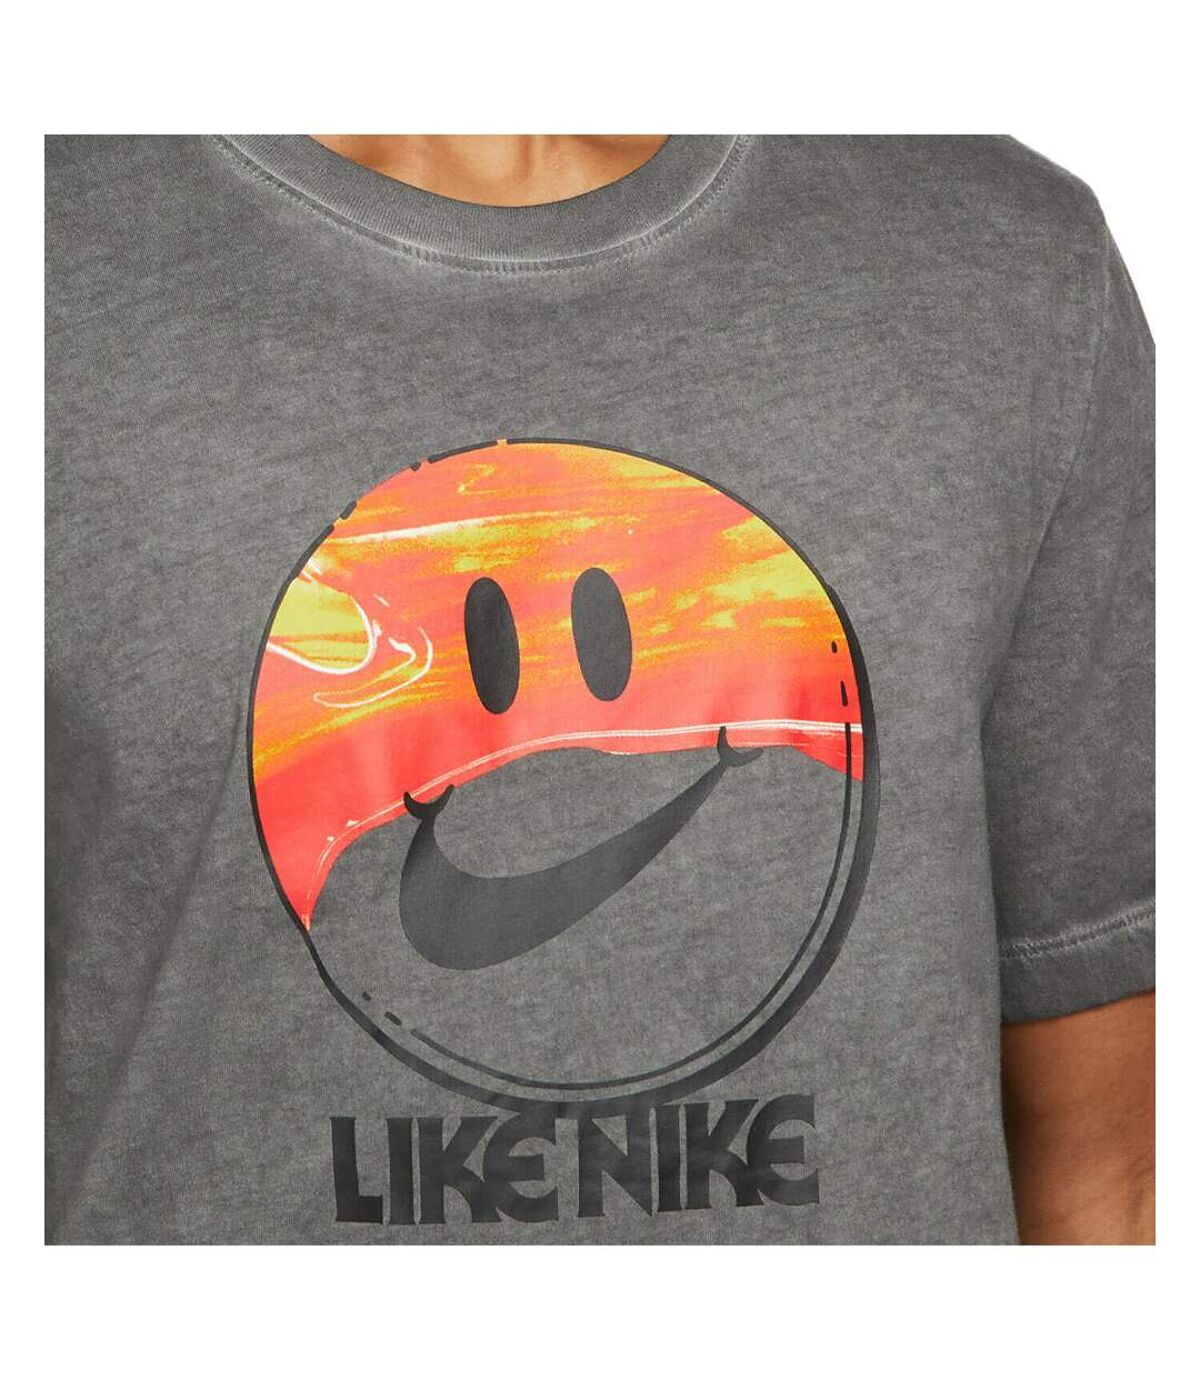 T-shirt Gris Homme Nike Sportswear